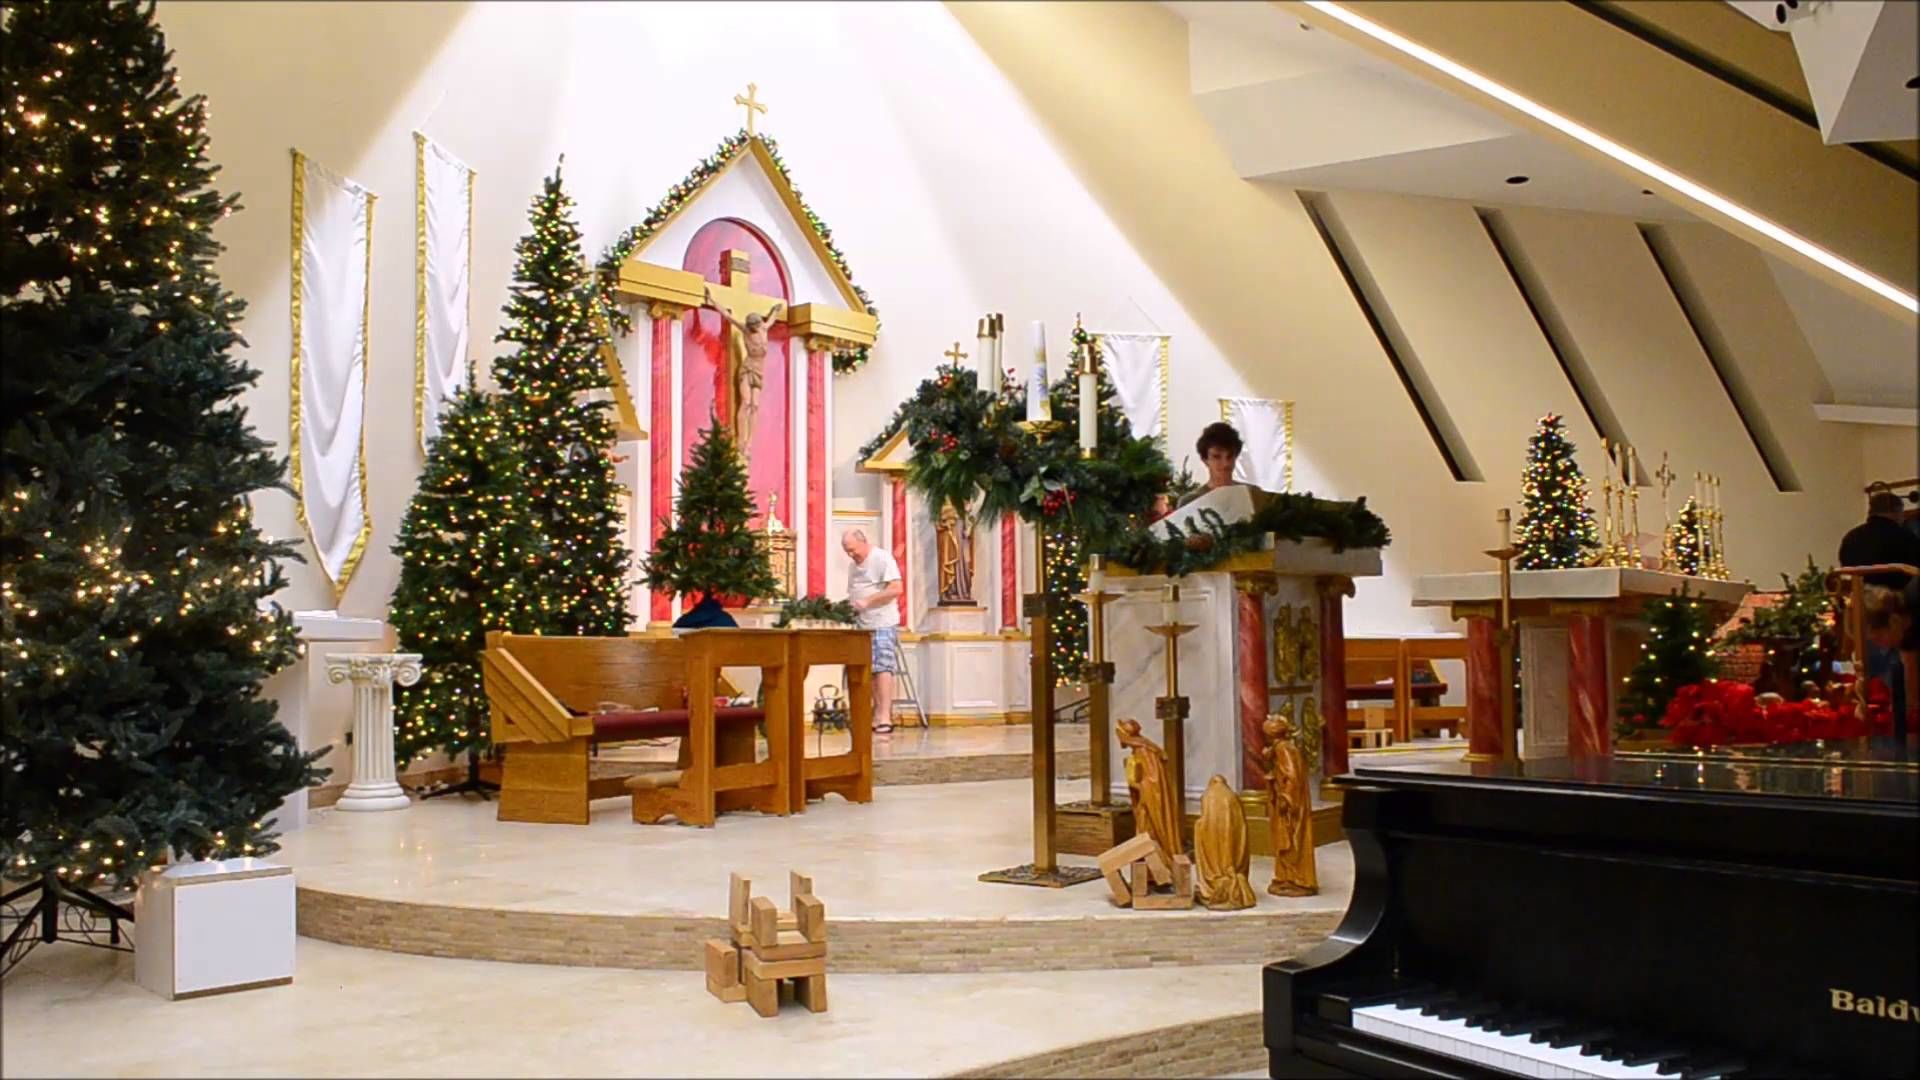 Cây thông được bày trí khắp không gian nhà thờ để chào đón đêm chúa giáng sinh